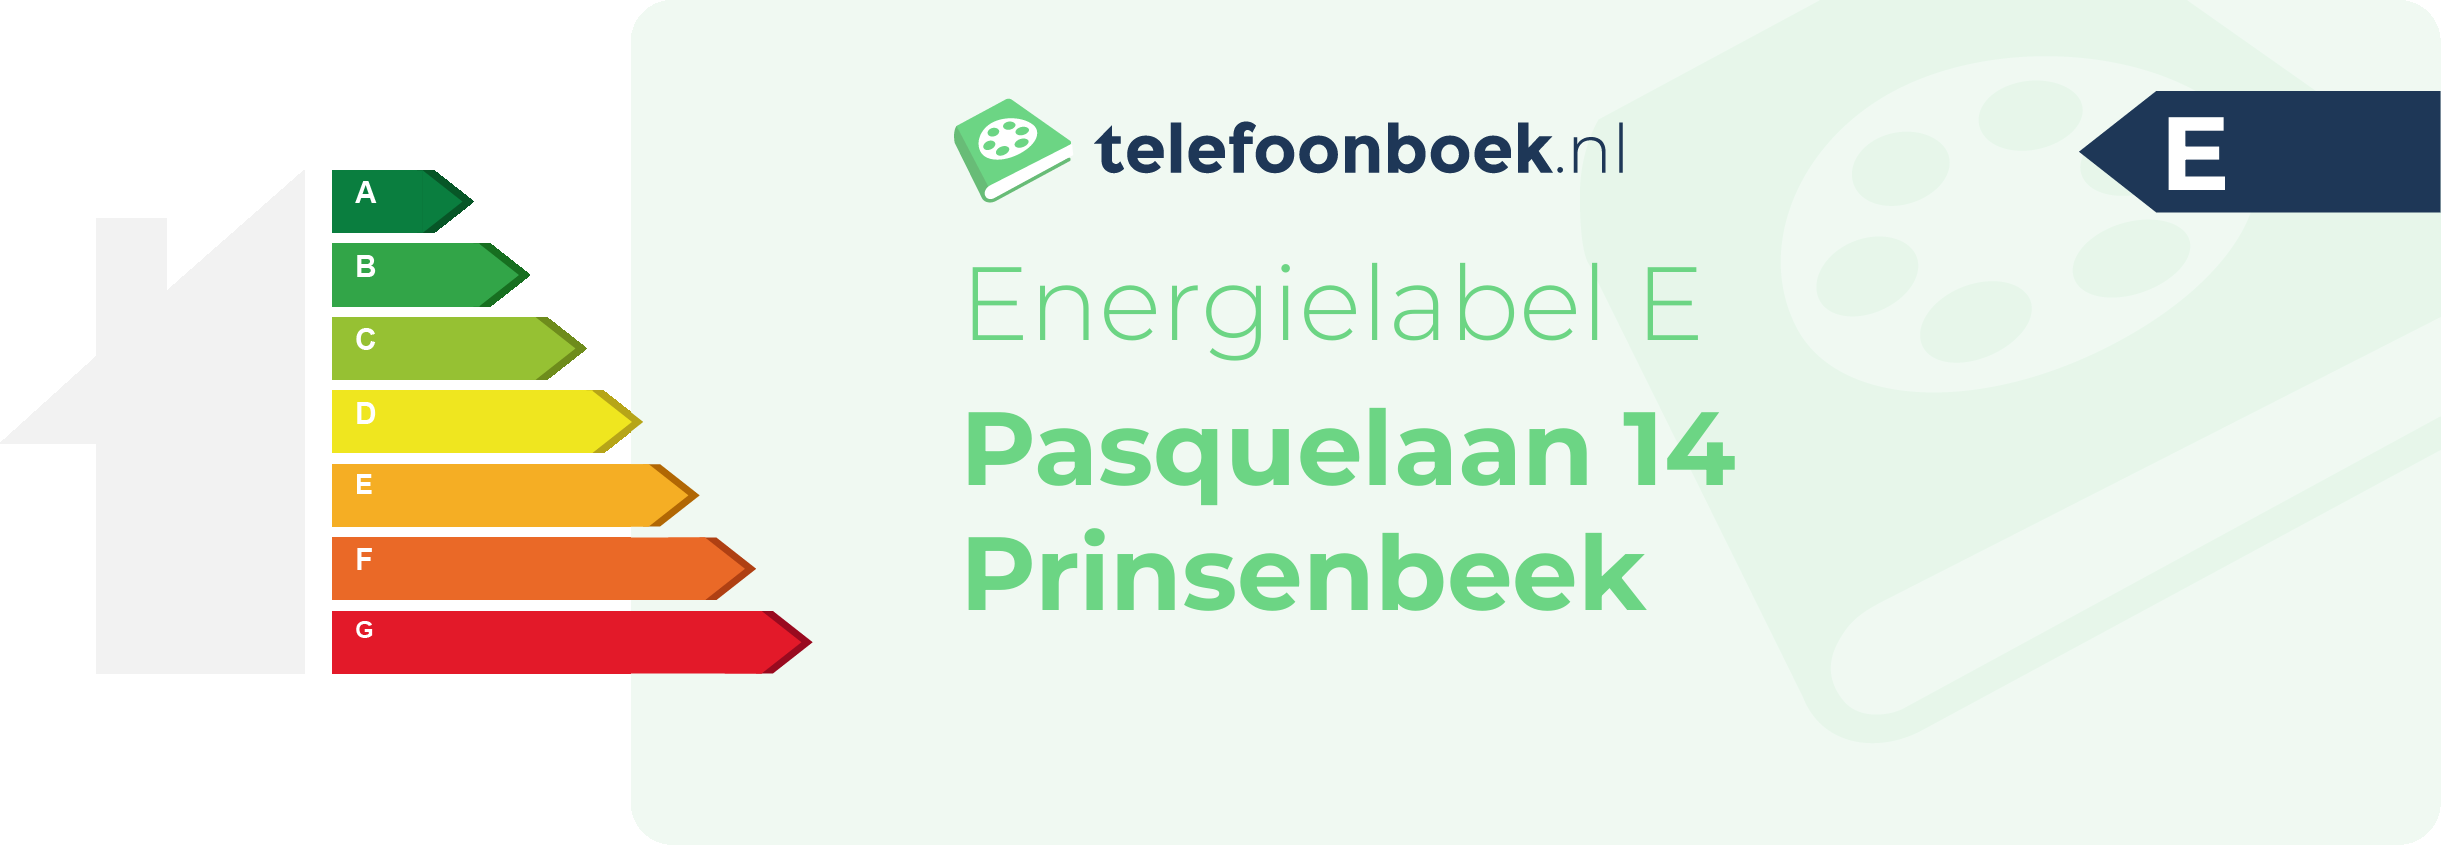 Energielabel Pasquelaan 14 Prinsenbeek